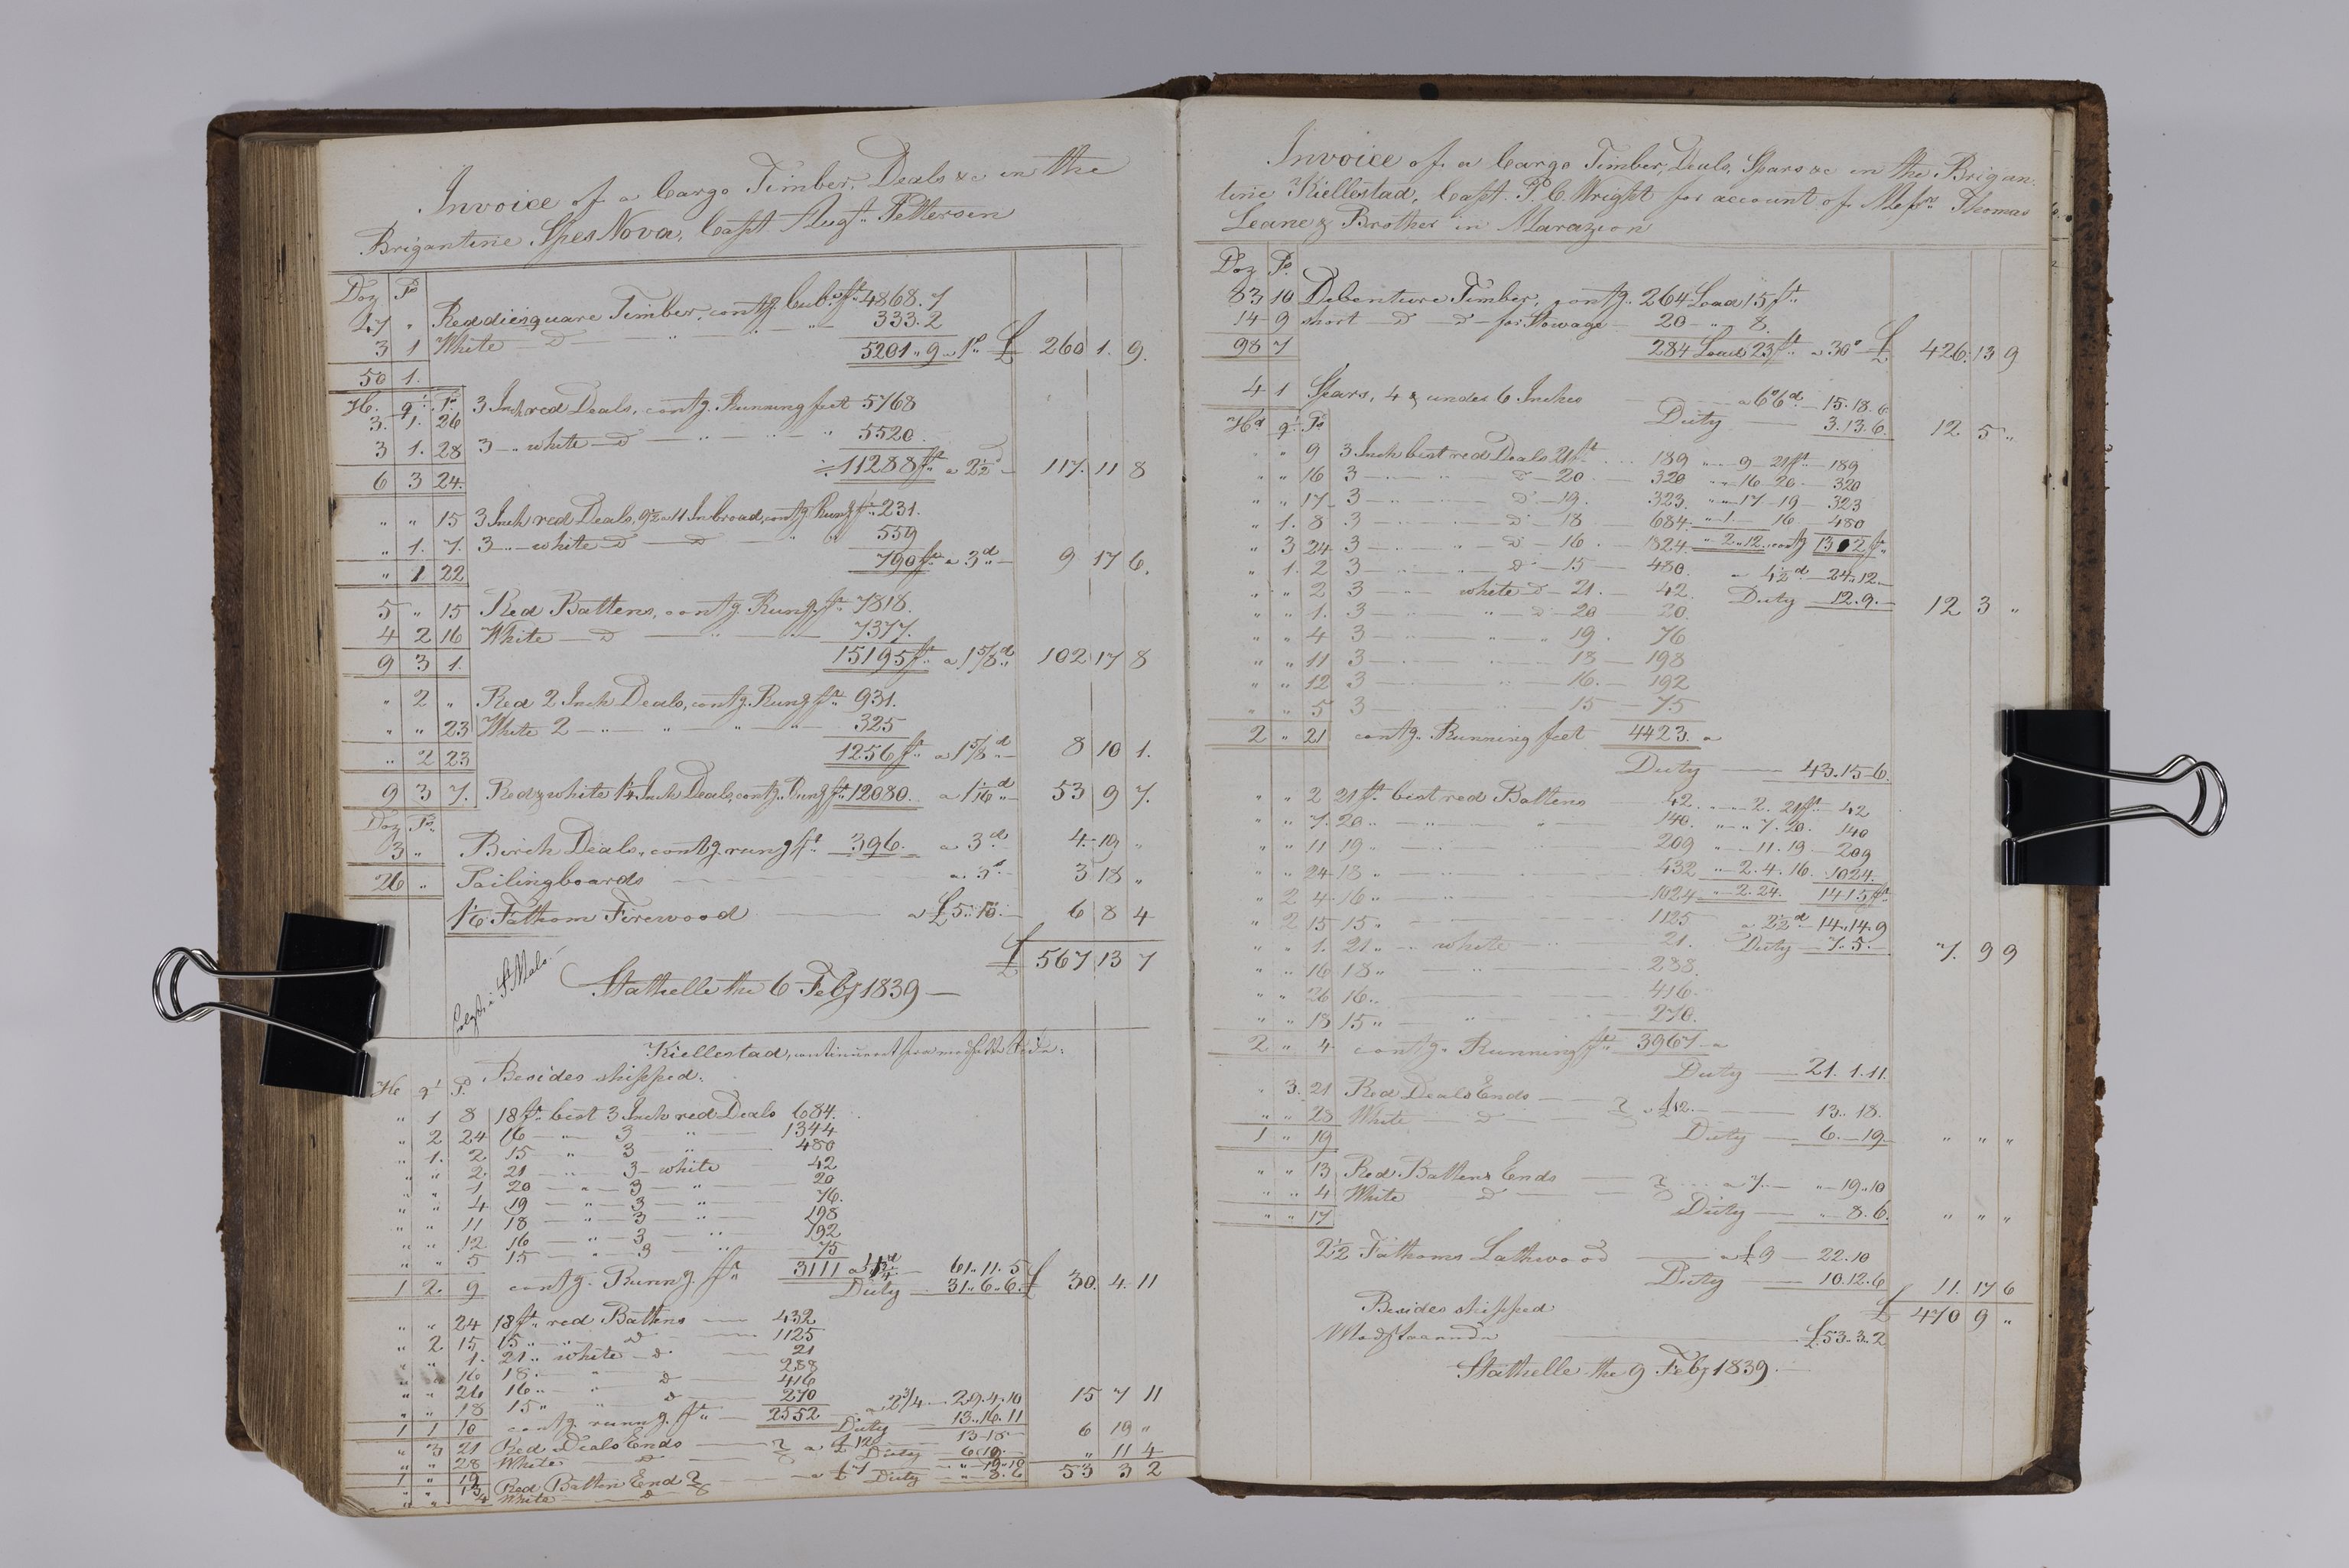 , Priscourant-tømmerpriser, 1834-38, 1834-1838, s. 366